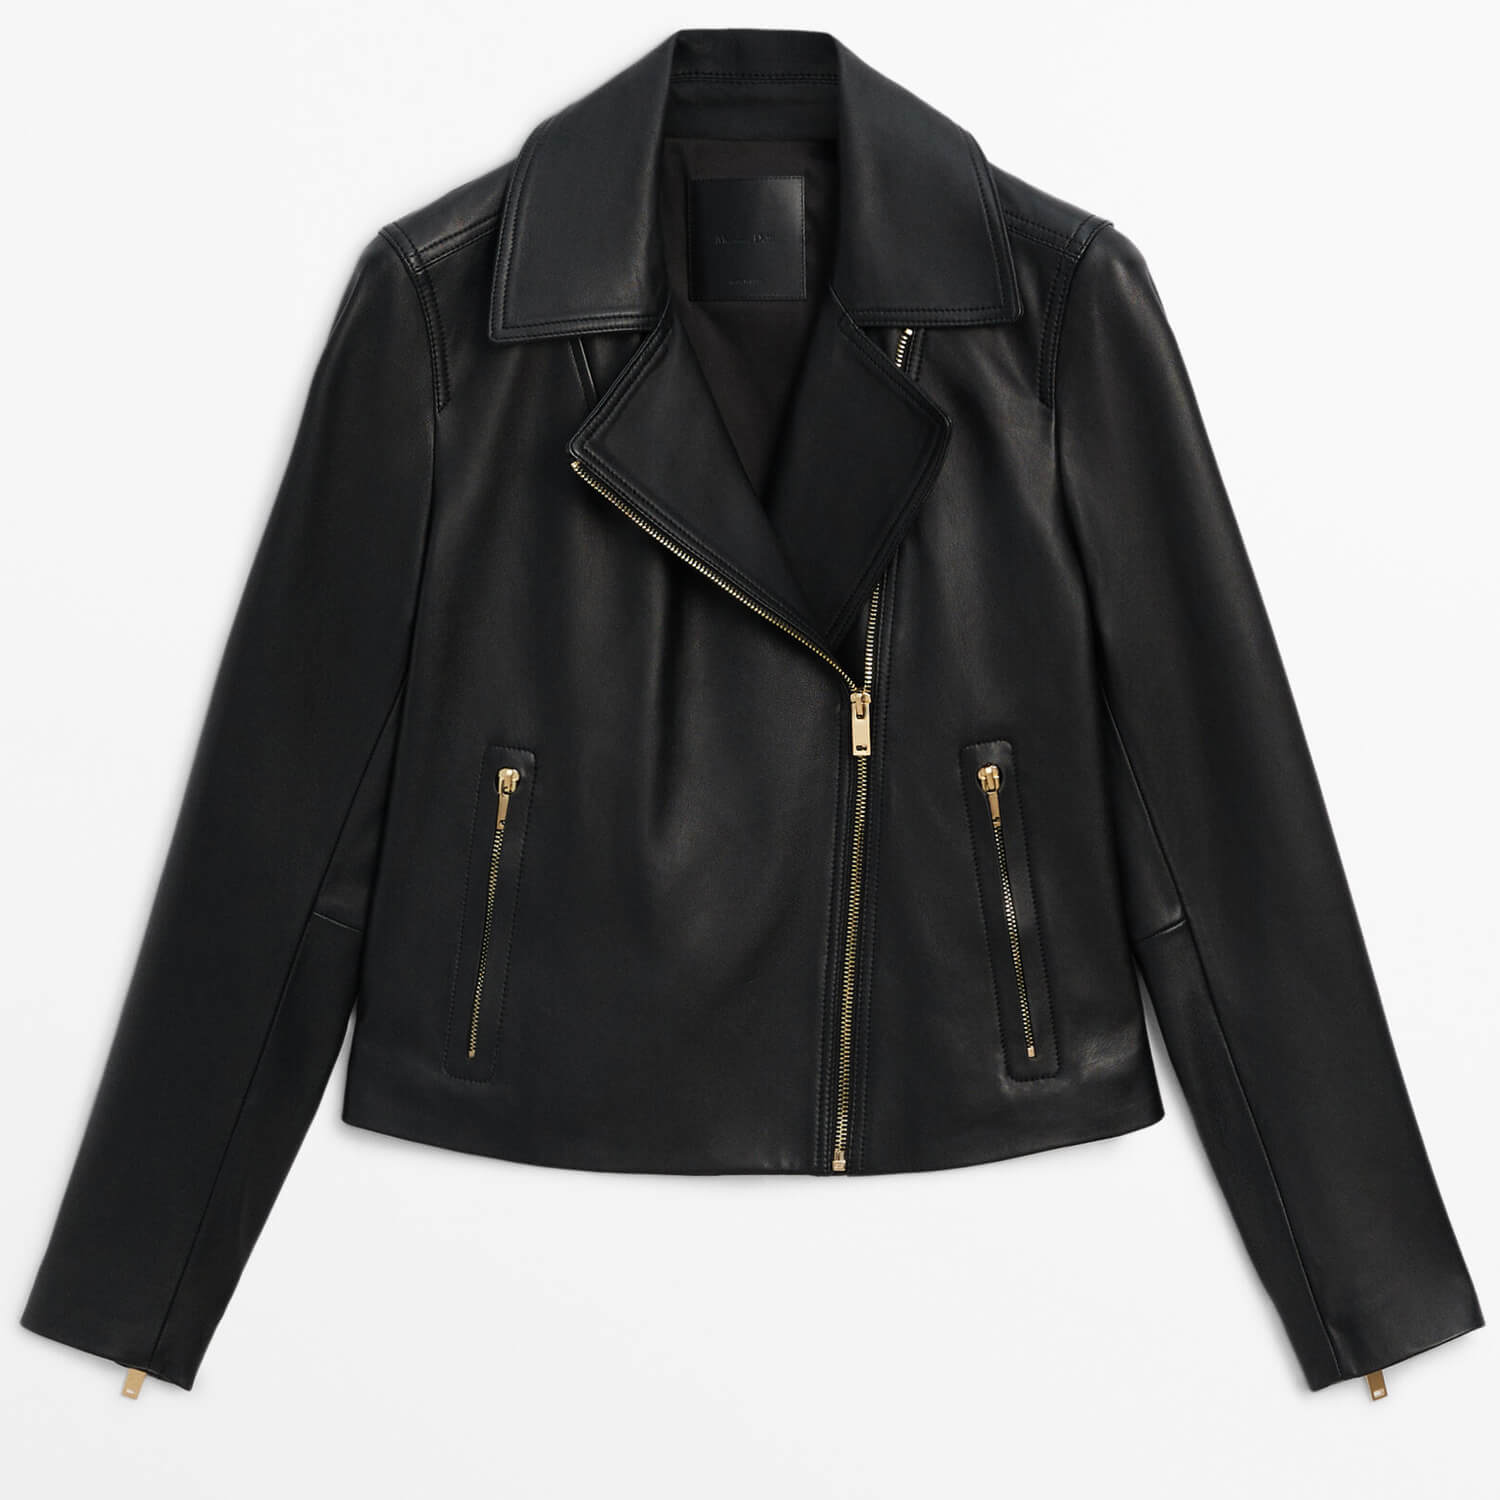 Куртка Massimo Dutti Nappa Leather Biker, черный женская байкерская куртка из натуральной овечьей кожи модная байкерская куртка из натуральной овечьей кожи размера плюс на весну 2019